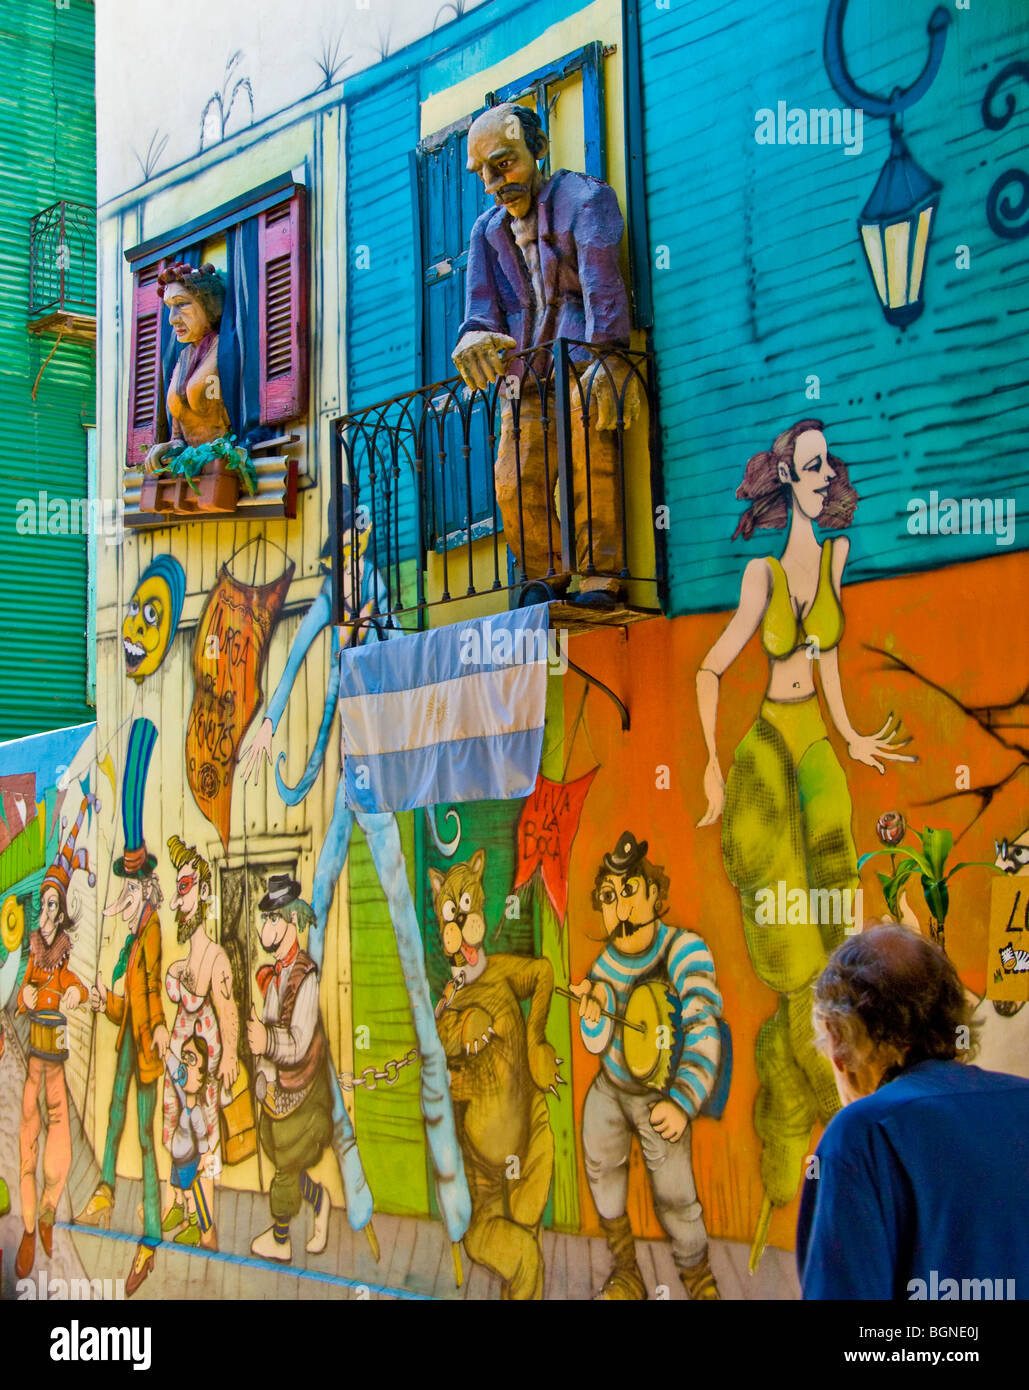 Bâtiments colorés bordant la rue piétonne, la Caminto, dans le quartier de La Boca, Buenos Aires, Argentine Banque D'Images